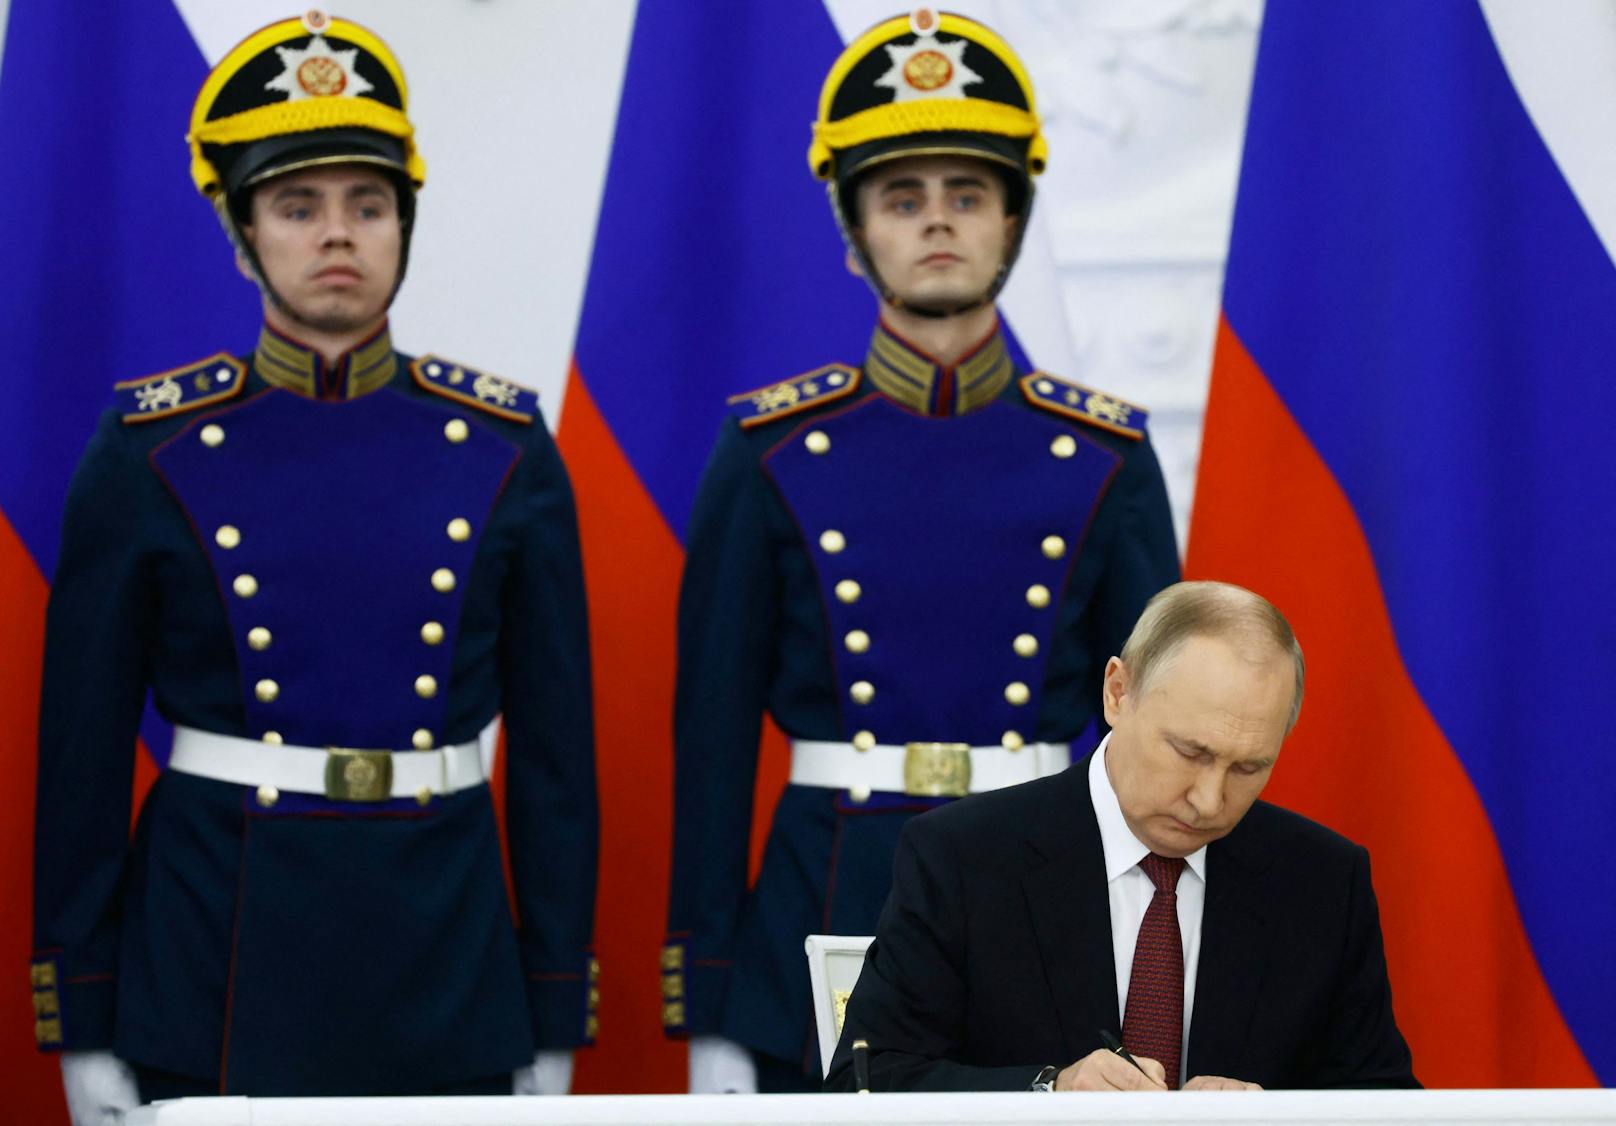 Der russische Präsident Wladimir Putin unterzeichnet am 30. September 2022 im Kreml in Moskau Verträge über die formelle Annexion von vier von russischen Truppen besetzten Regionen der Ukraine - Lugansk, Donezk, Cherson und Saporischschja.